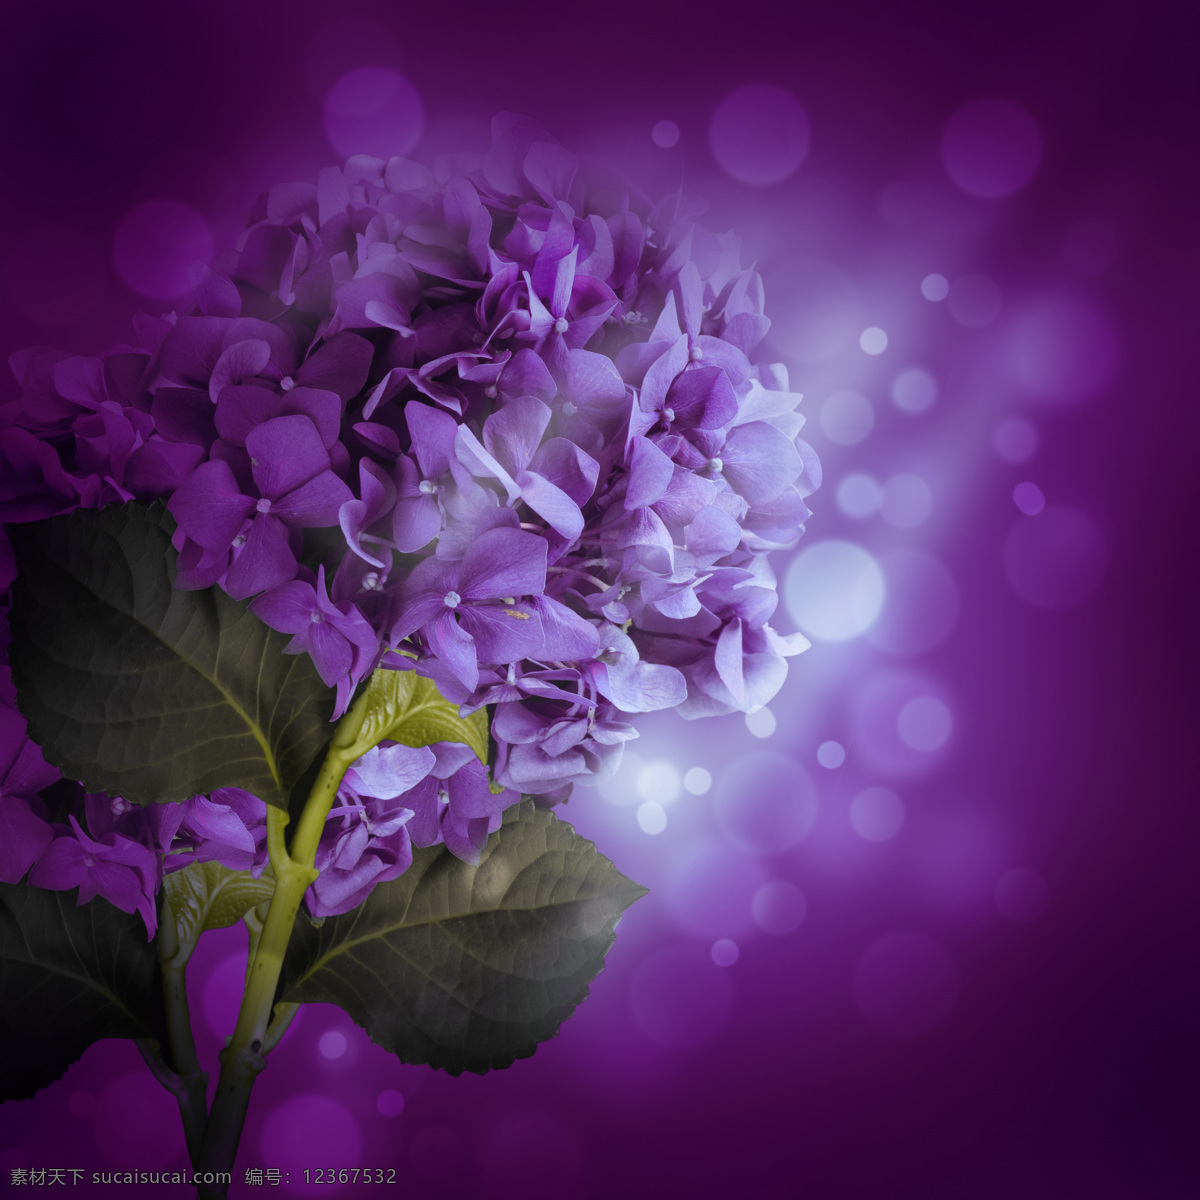 梦幻 紫色 绣 球花 背景 紫色背景 绣球花 梦幻紫色 鲜花 漂亮鲜花 美丽鲜花 花朵 梦幻背景 梦幻光斑 情人节背景 情人节素材 花草树木 生物世界